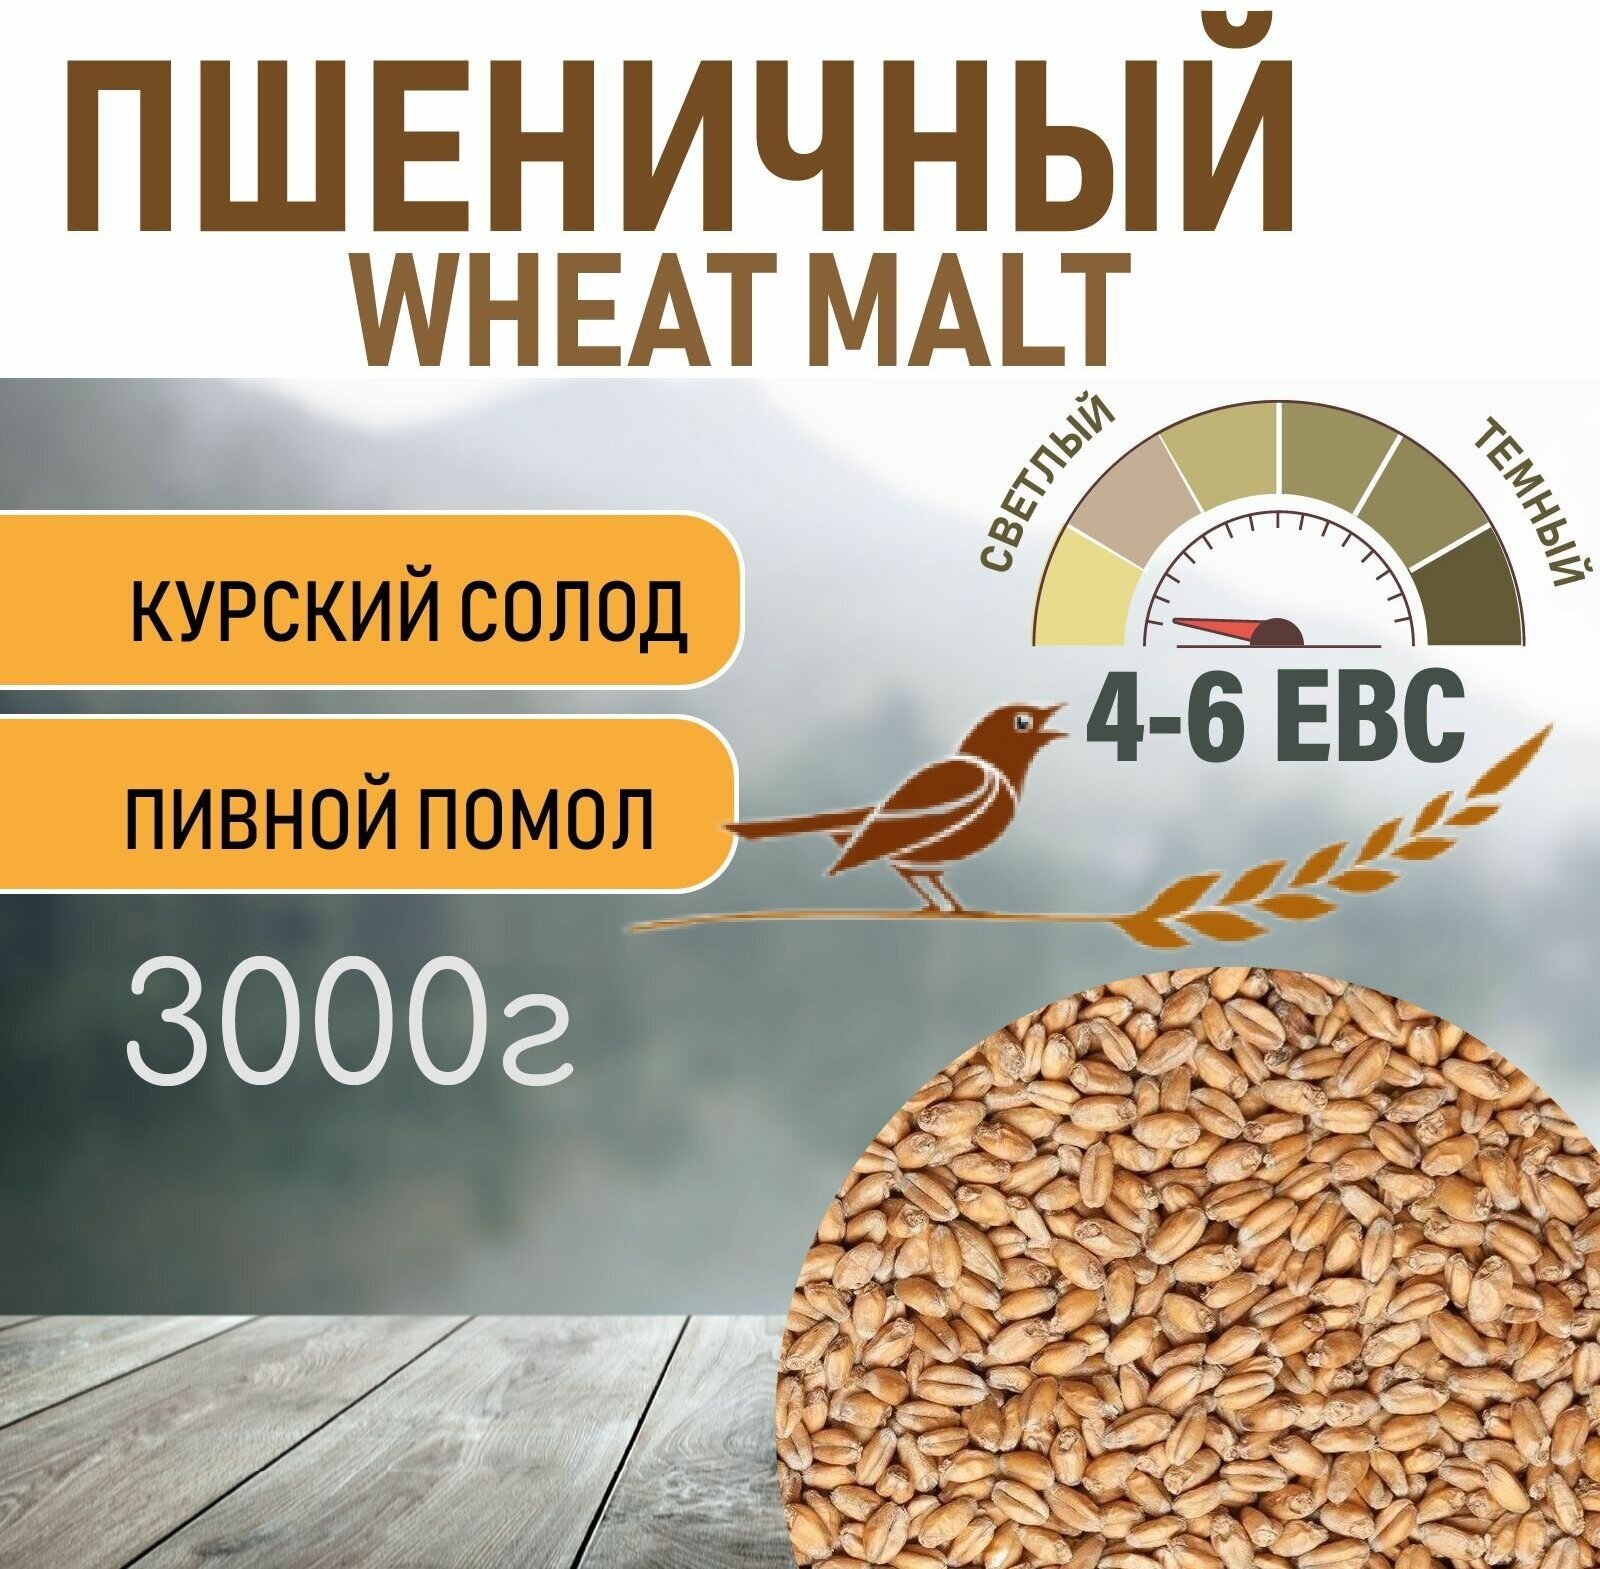 Солод пшеничный wheat ЕВС 4-6 (Курский солод) 3 КГ c помолом